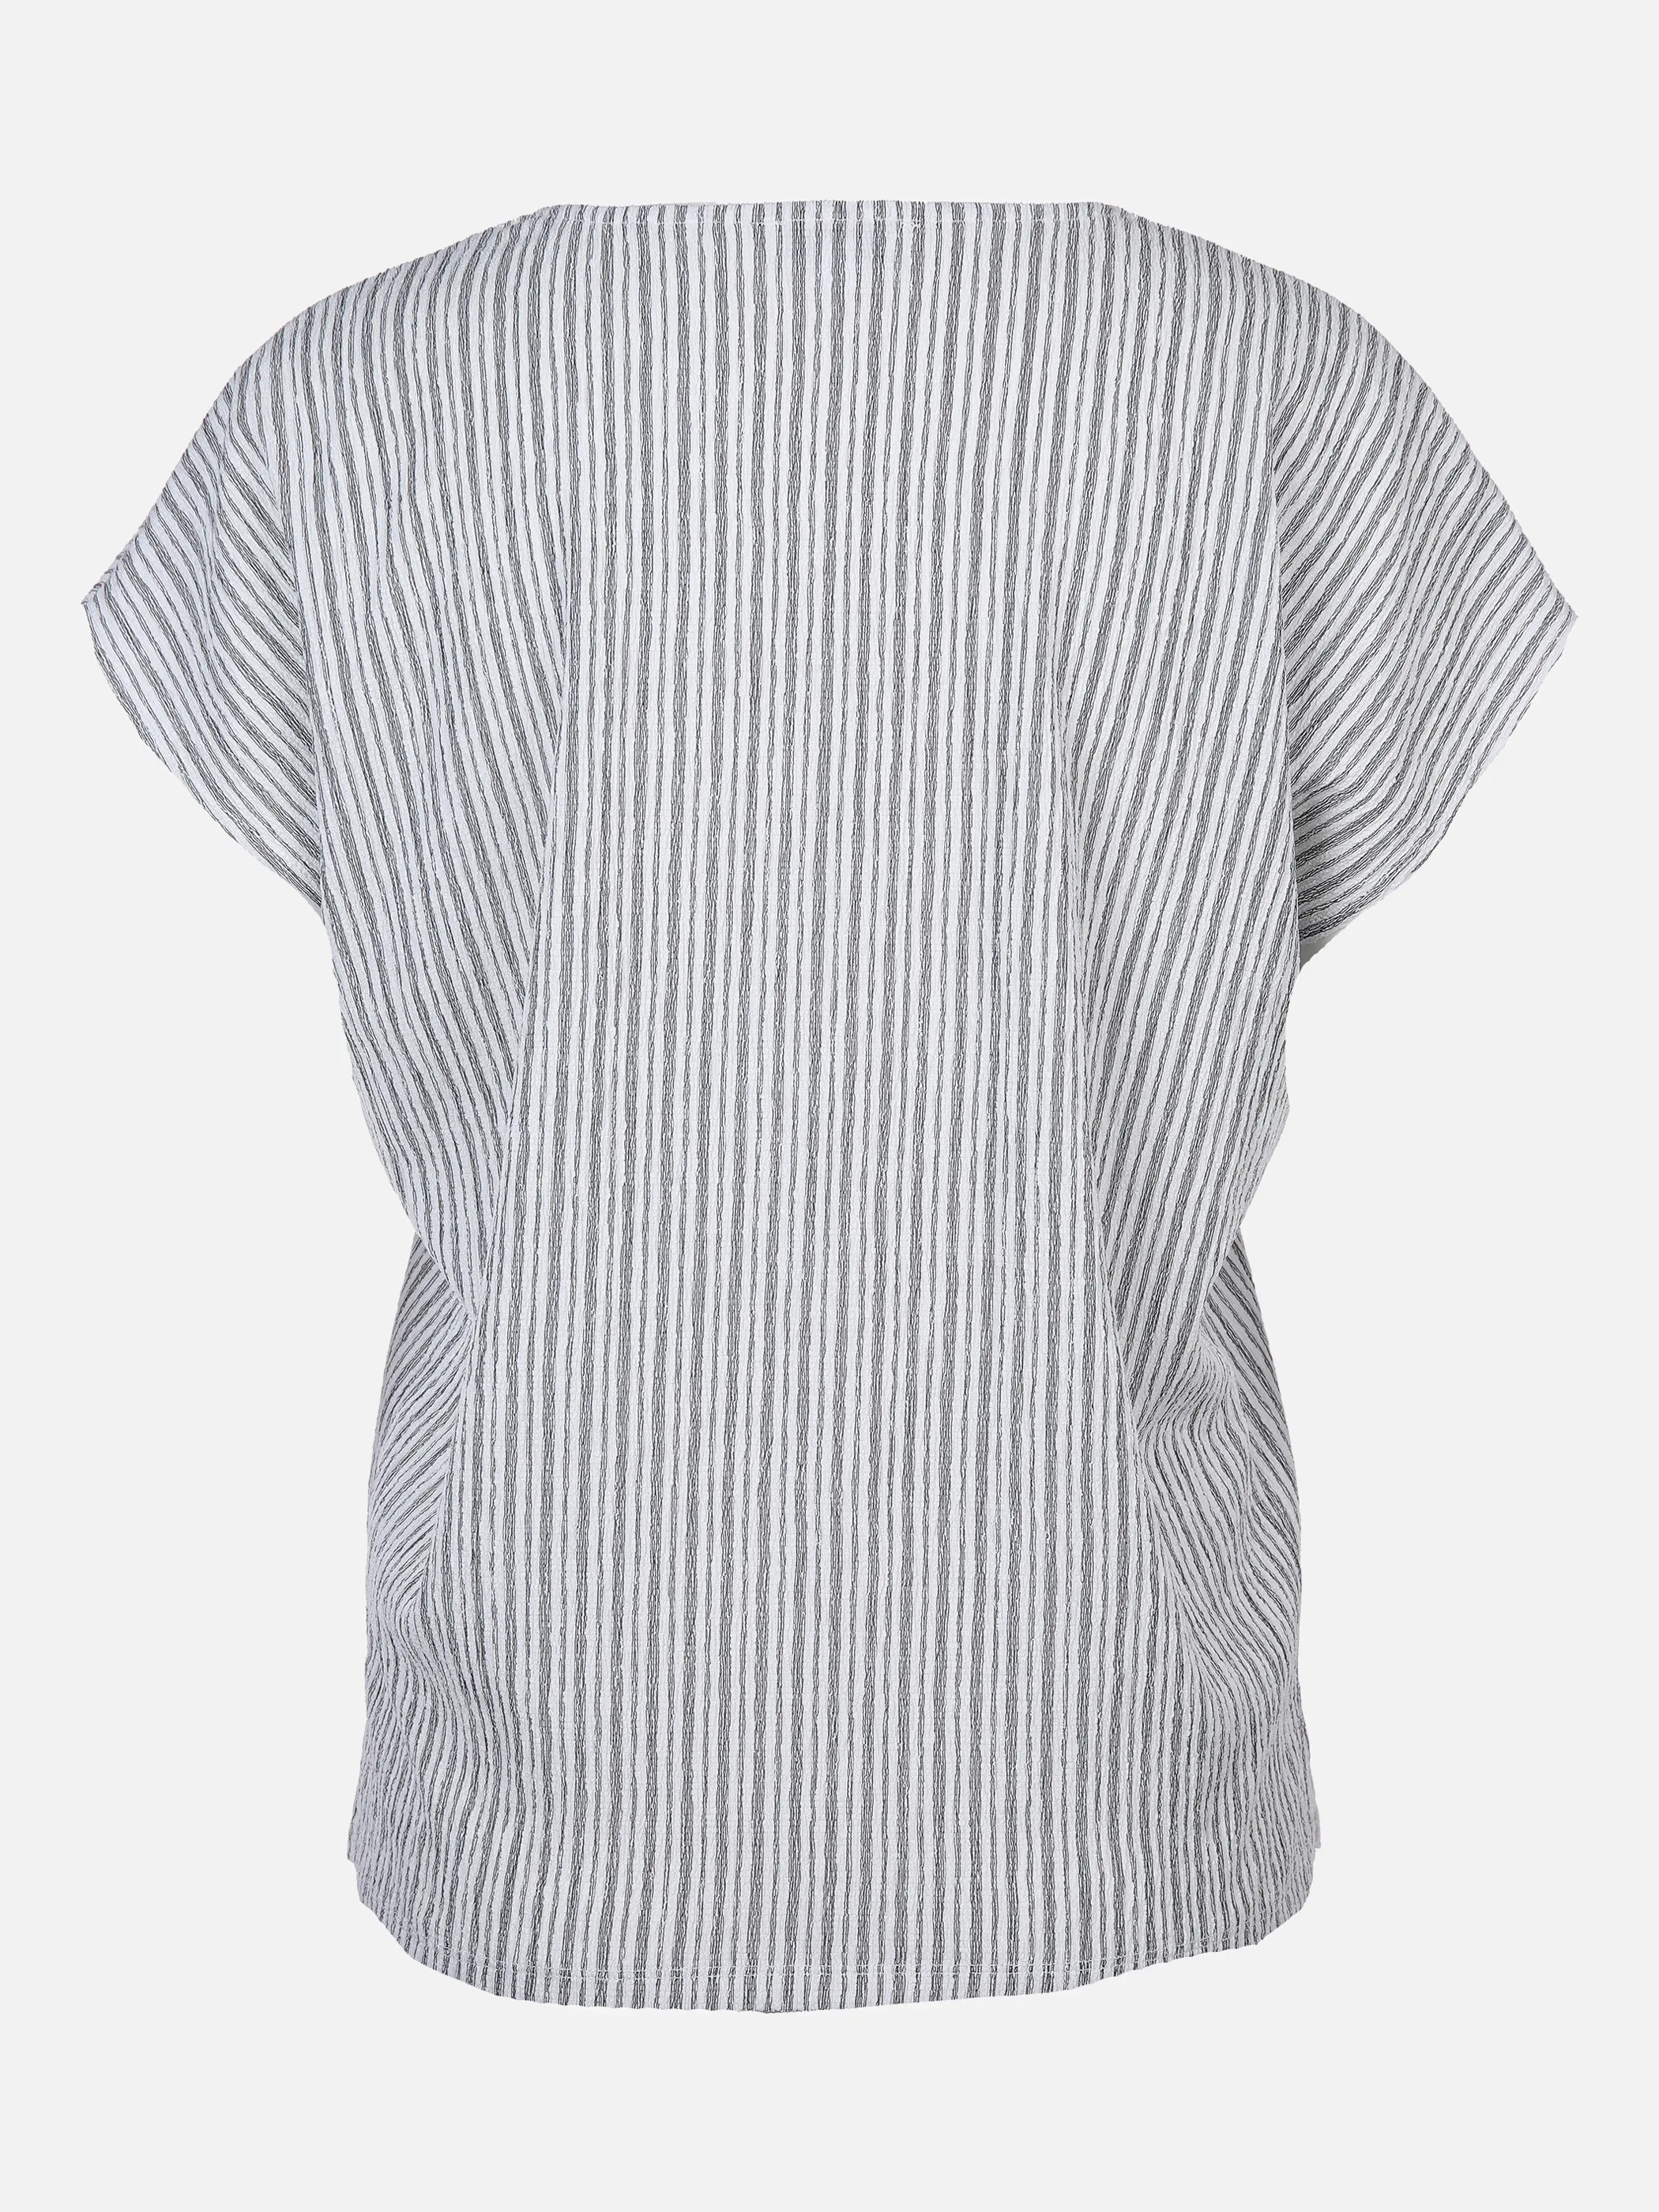 Lisa Tossa Da-T-Shirt mit Crashoptik Weiß 873511 OFFWH/SCHW 2